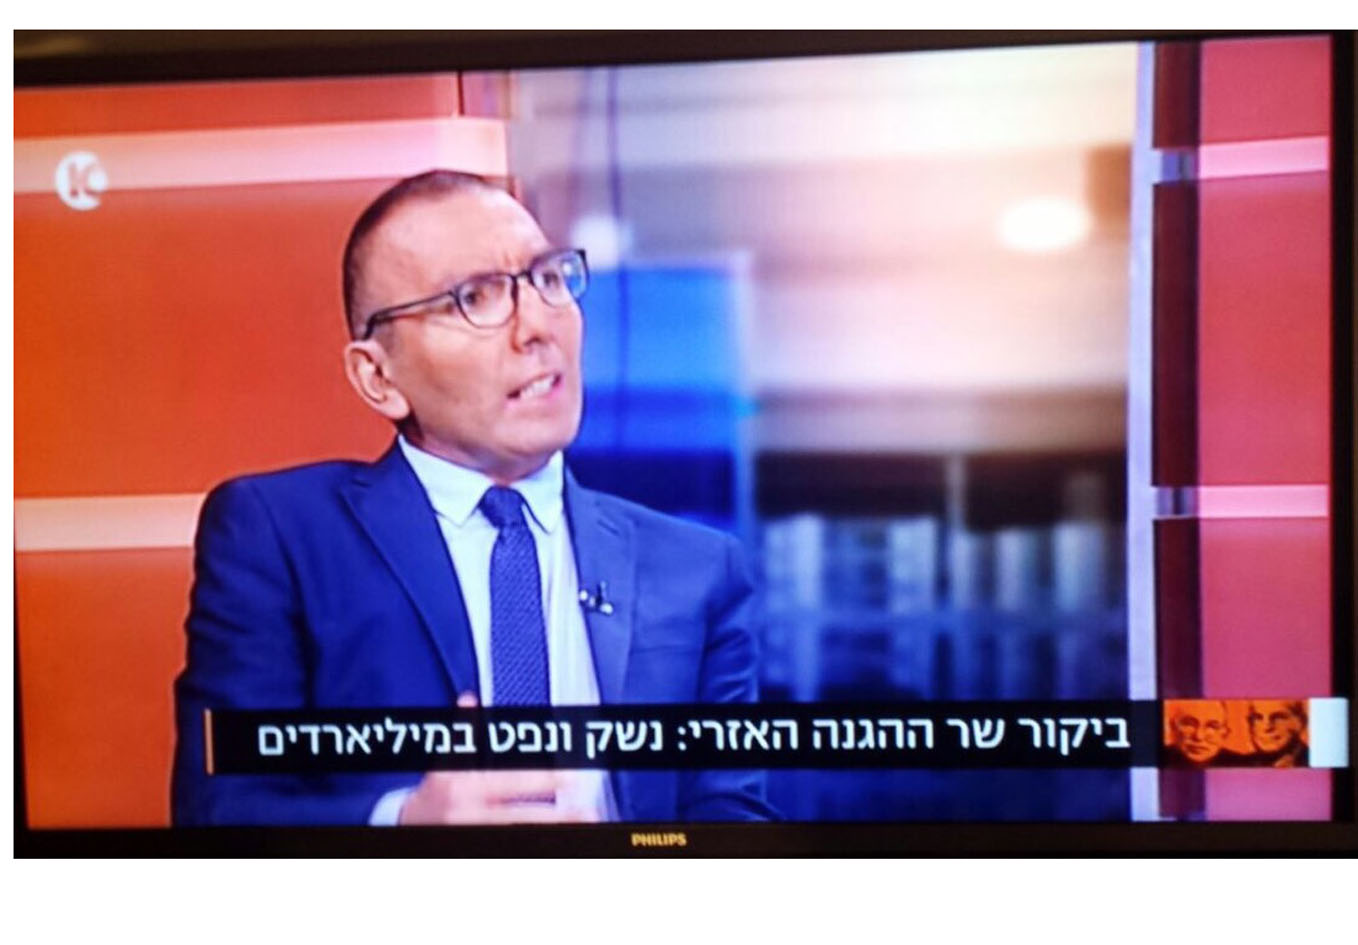 Визит министра обороны Азербайджана обсужден в популярной аналитической передаче Десятого израильского телеканала